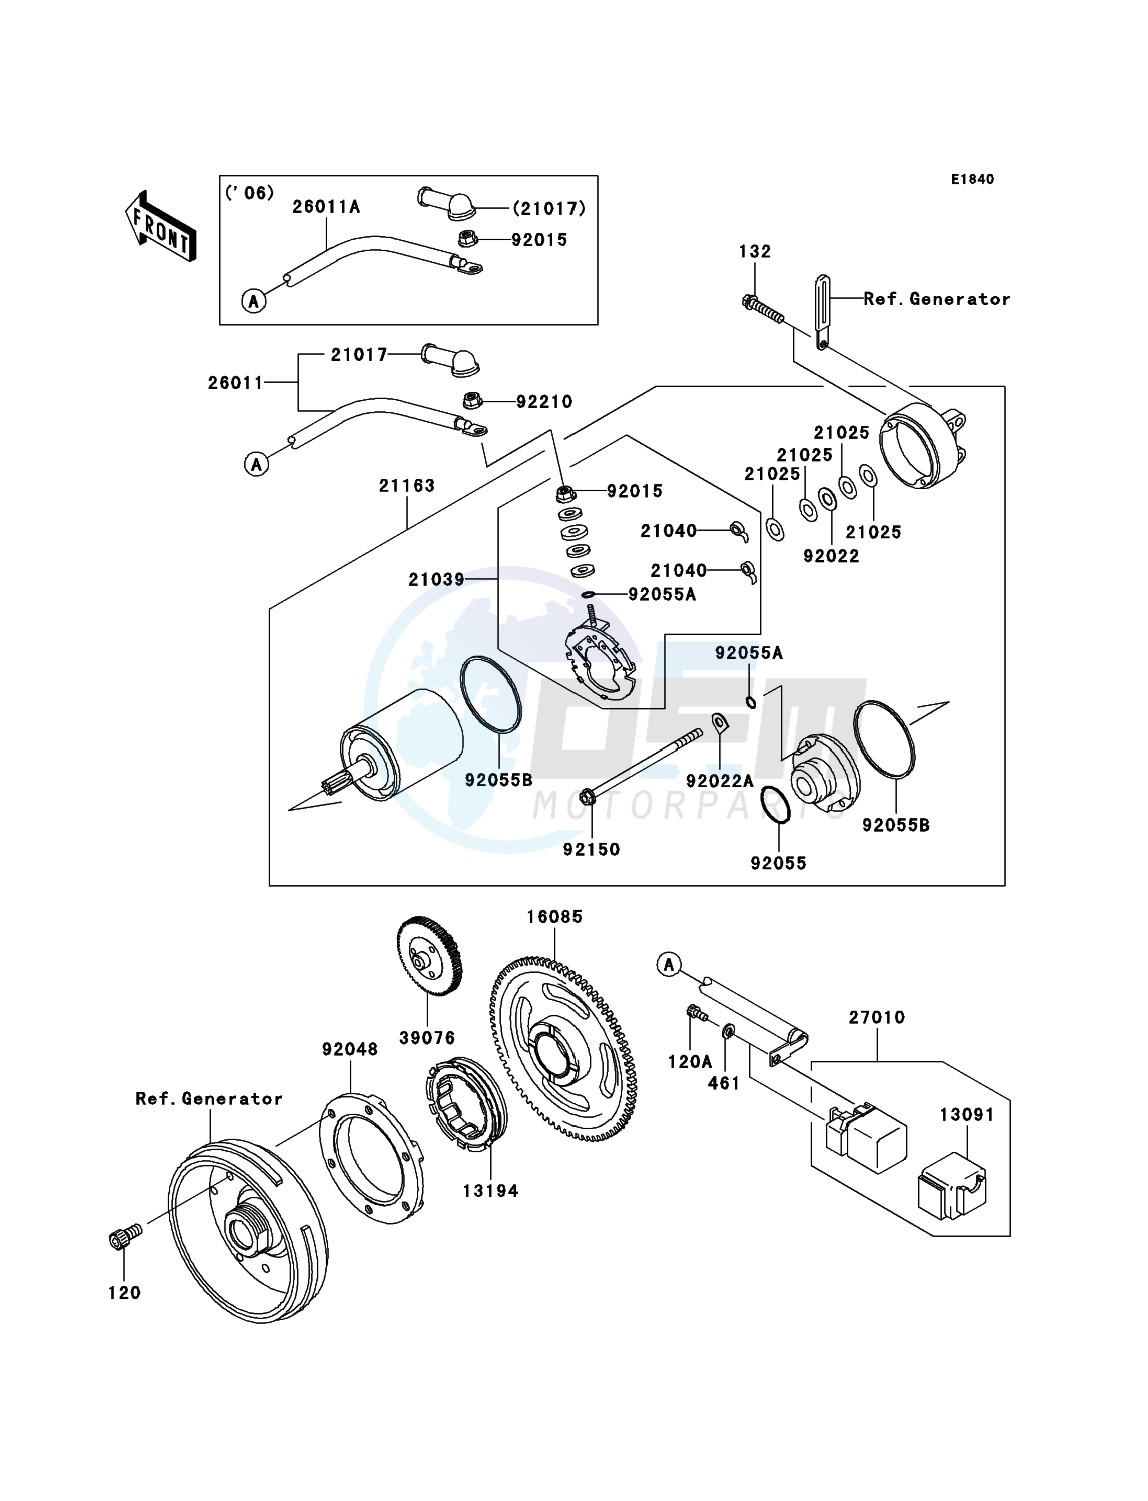 Starter Motor blueprint